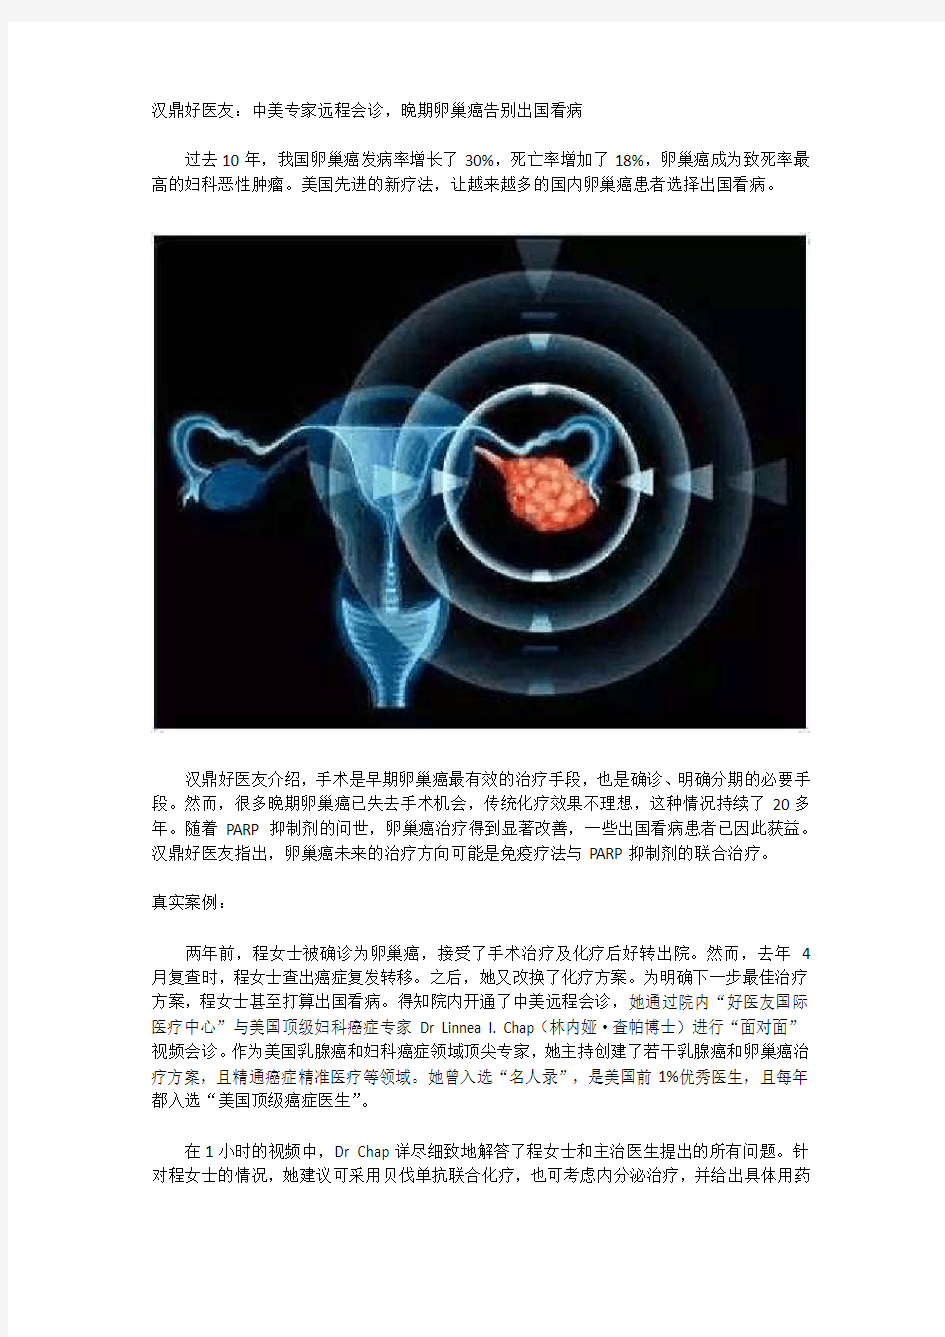 中美专家远程会诊,晚期卵巢癌无须出国看病